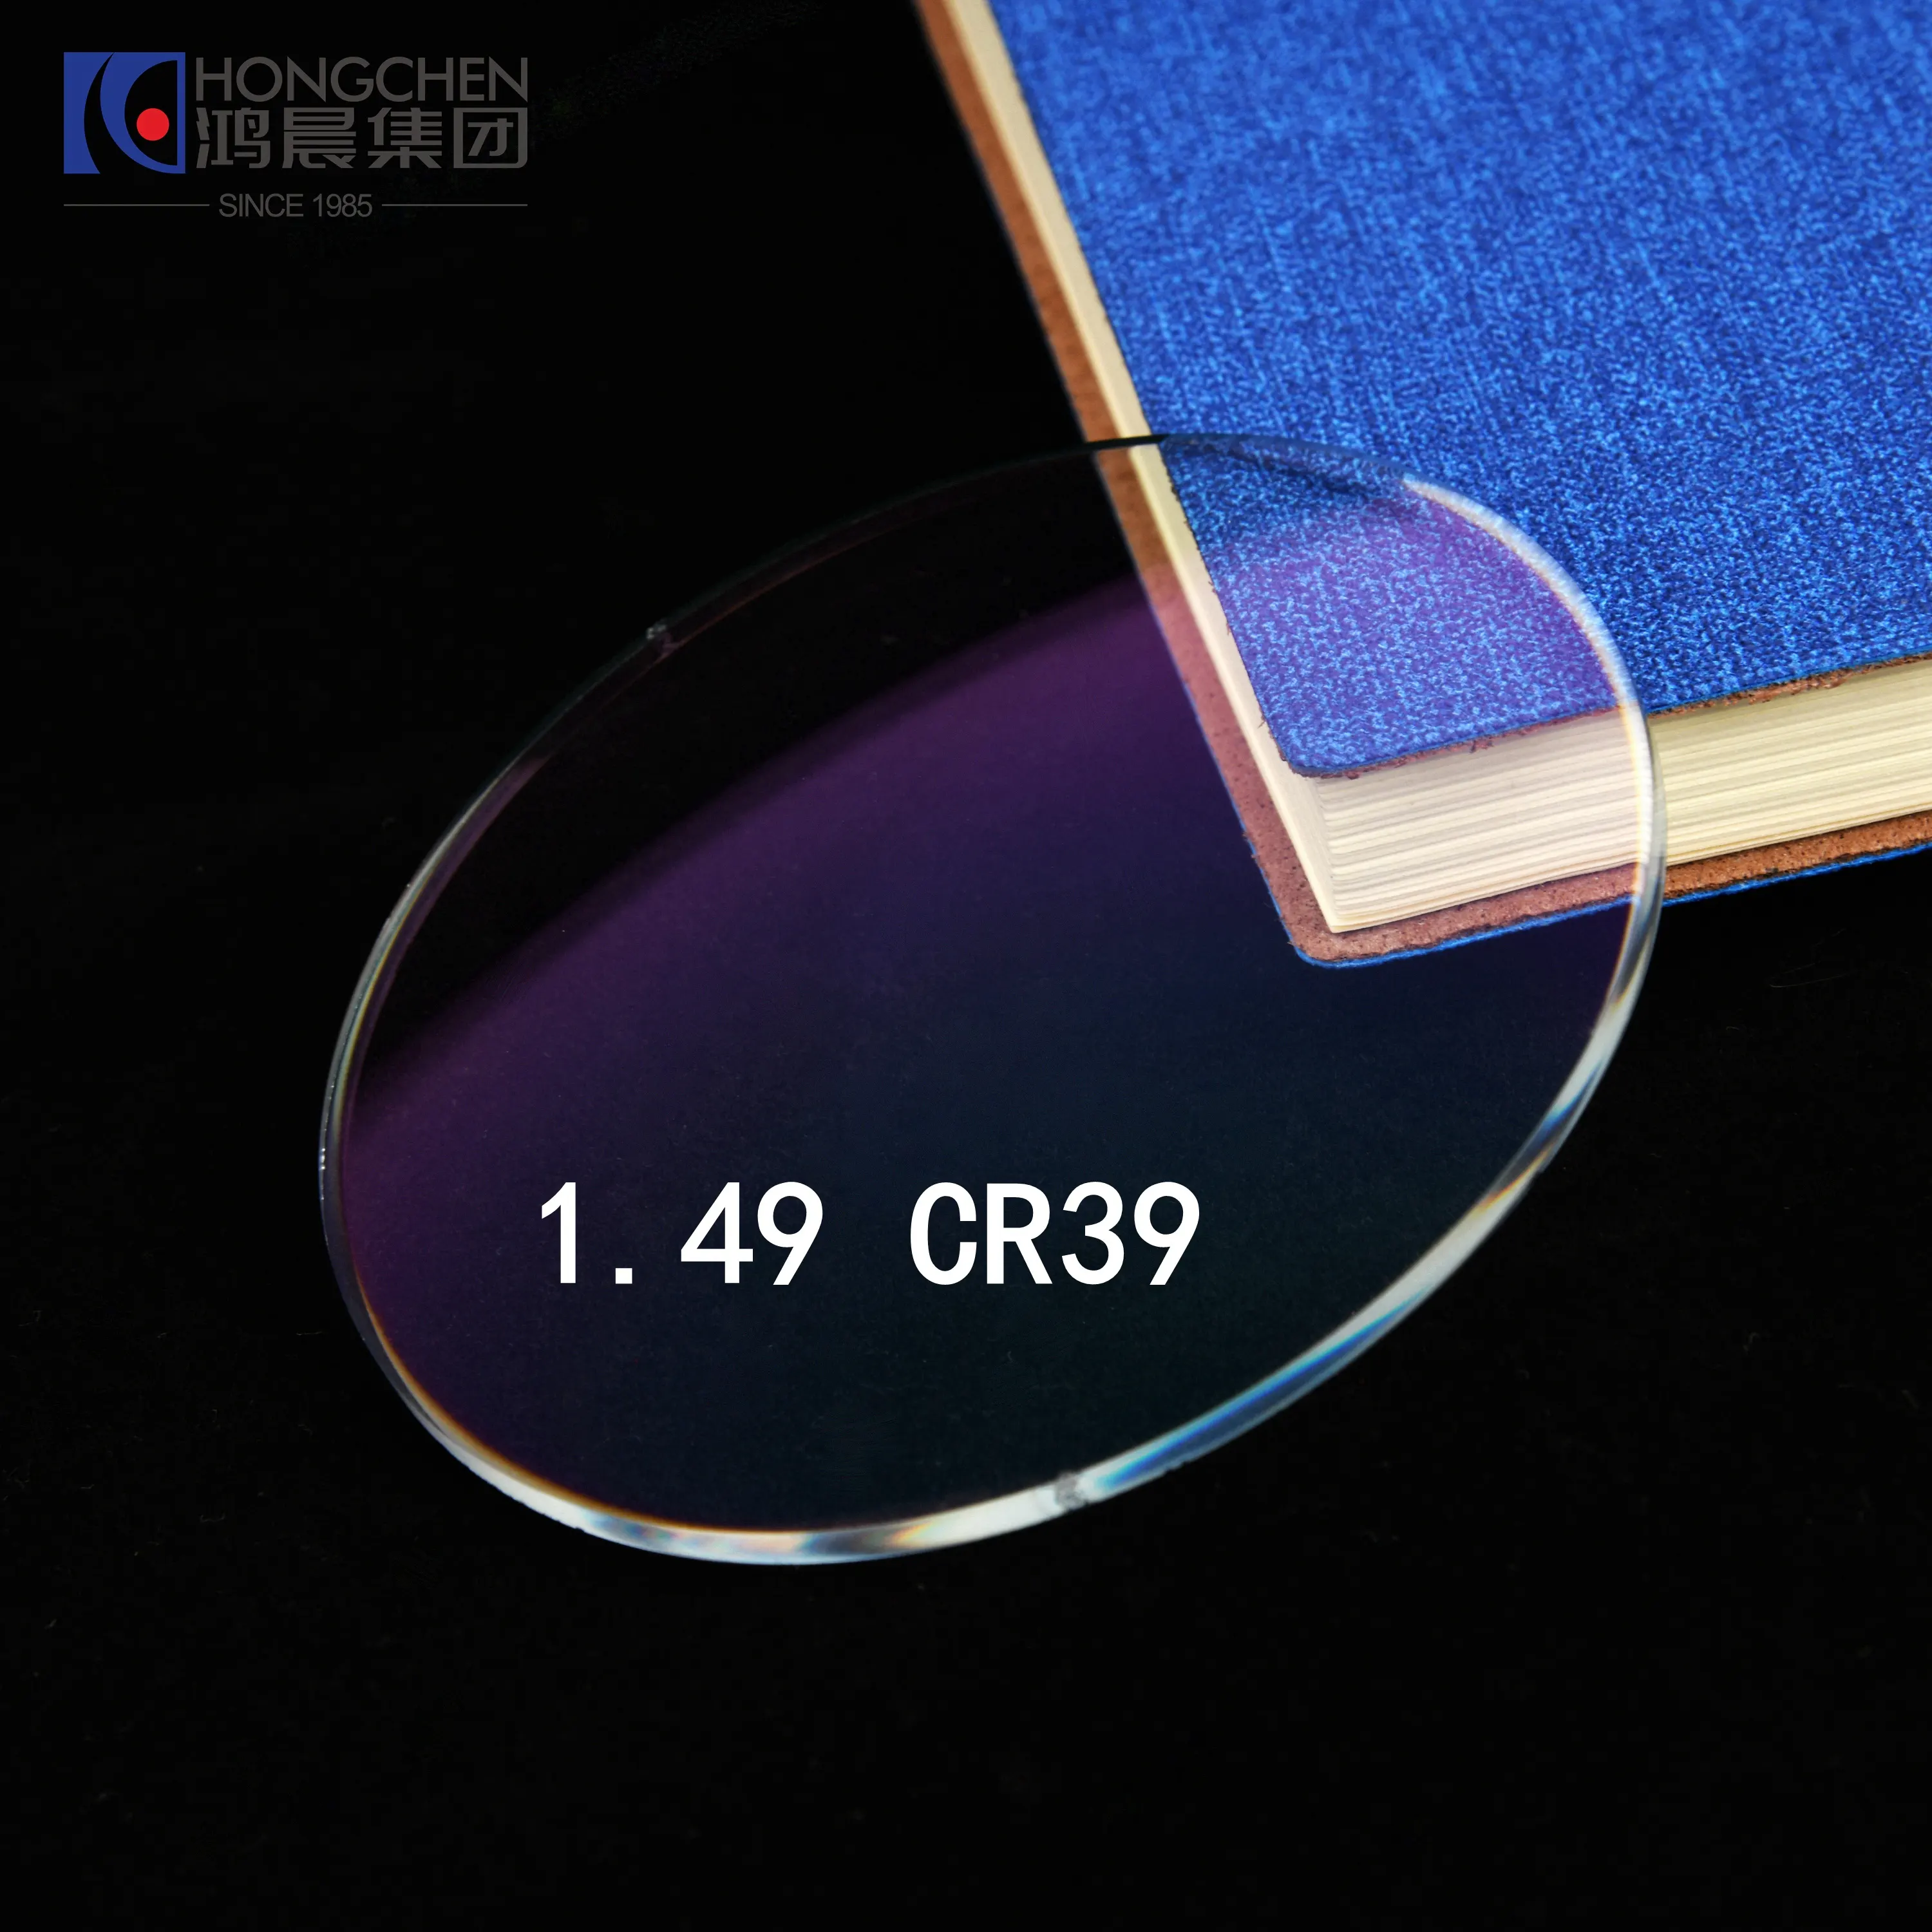 HONGCHENカスタマイズCR-39 1.499 UC HCHMCコーティングされていないシングルビジョン白色樹脂レンズ非球面眼鏡レンズ